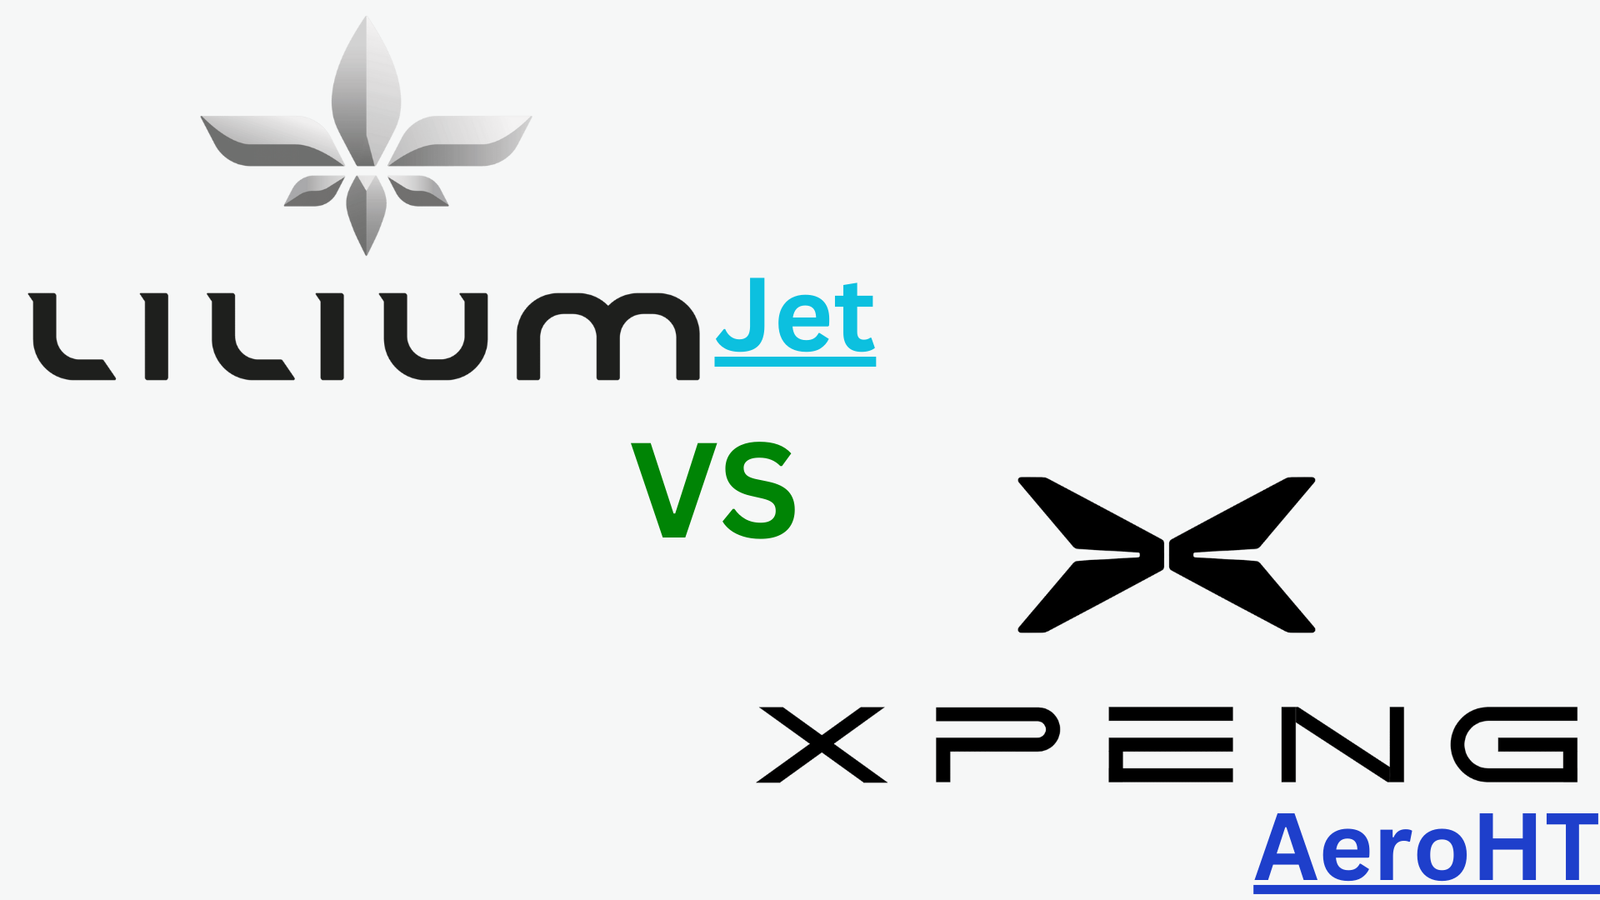 Lilium Jet VS Xpeng